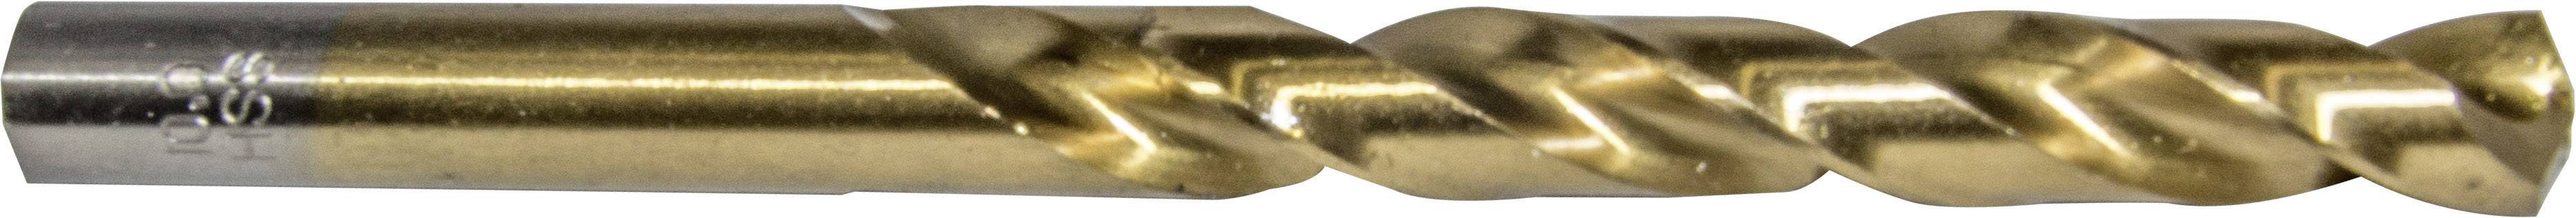 HELLER 29255 9 Metall-Spiralbohrer 1 Stück 2.5 mm Gesamtlänge 57 mm 1 St.